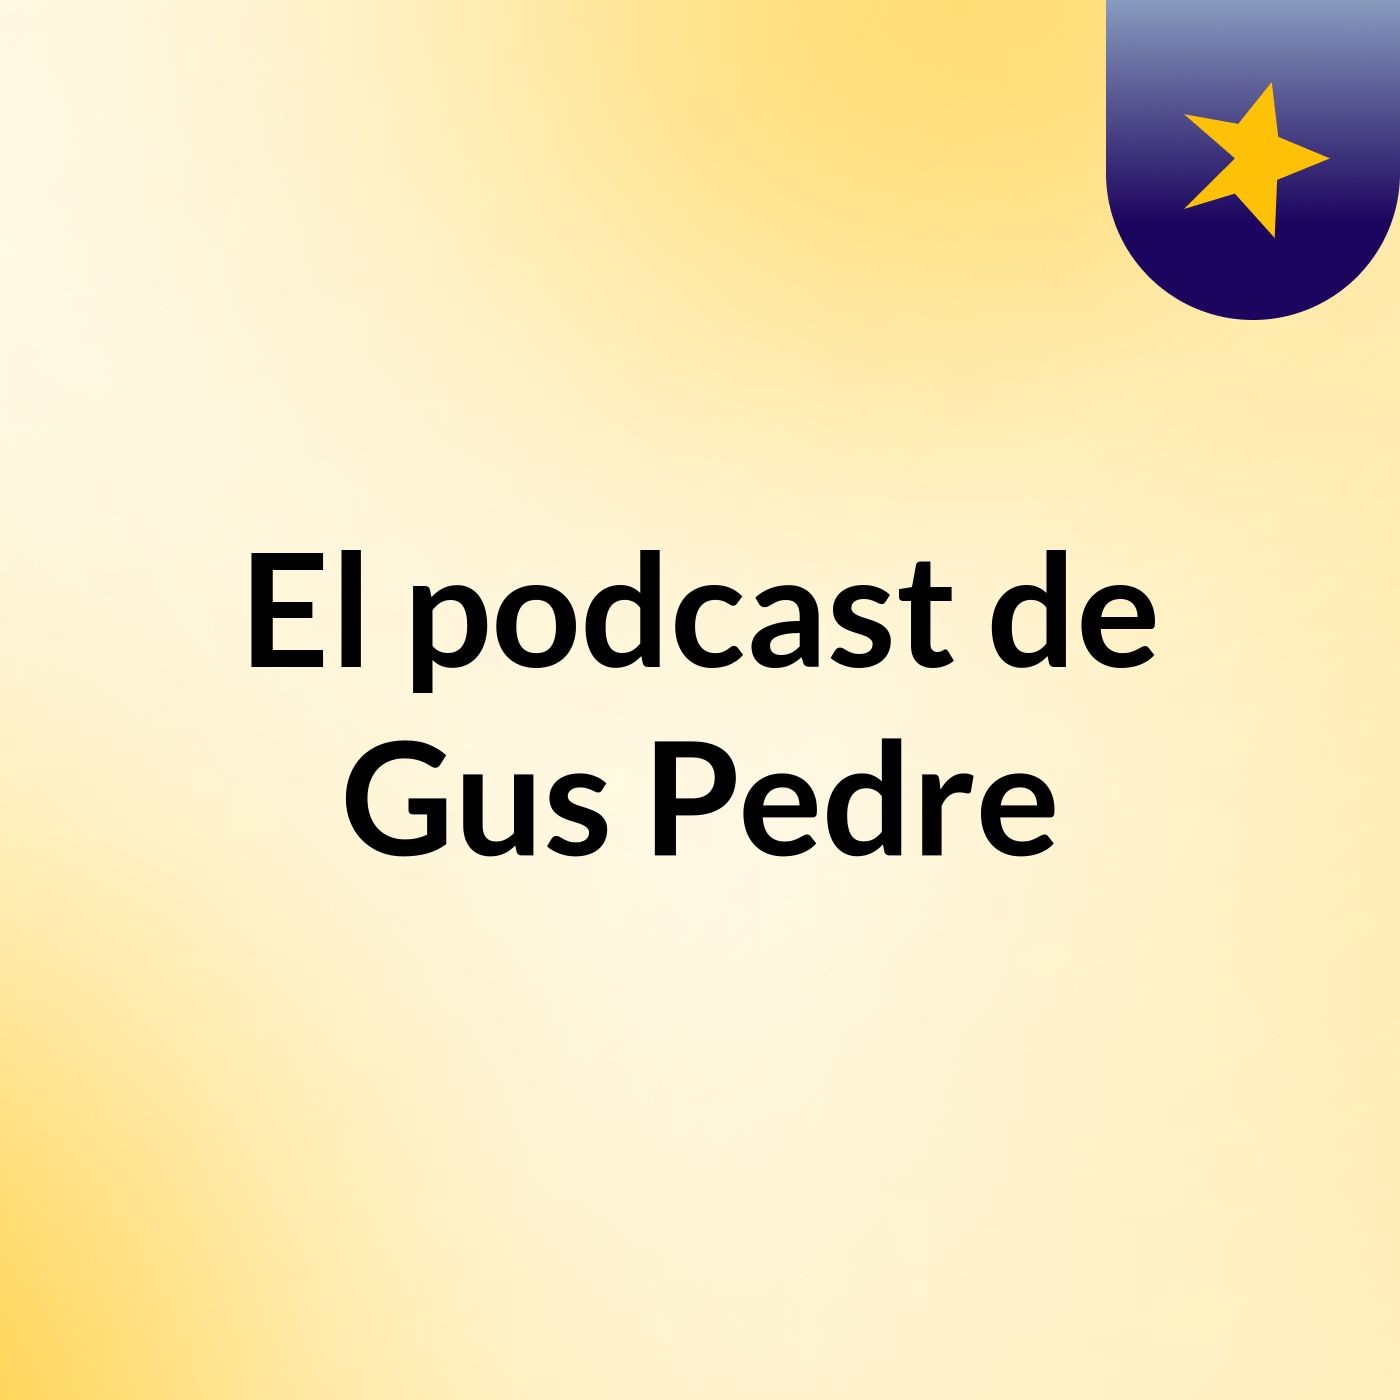 El podcast de Gus Pedre